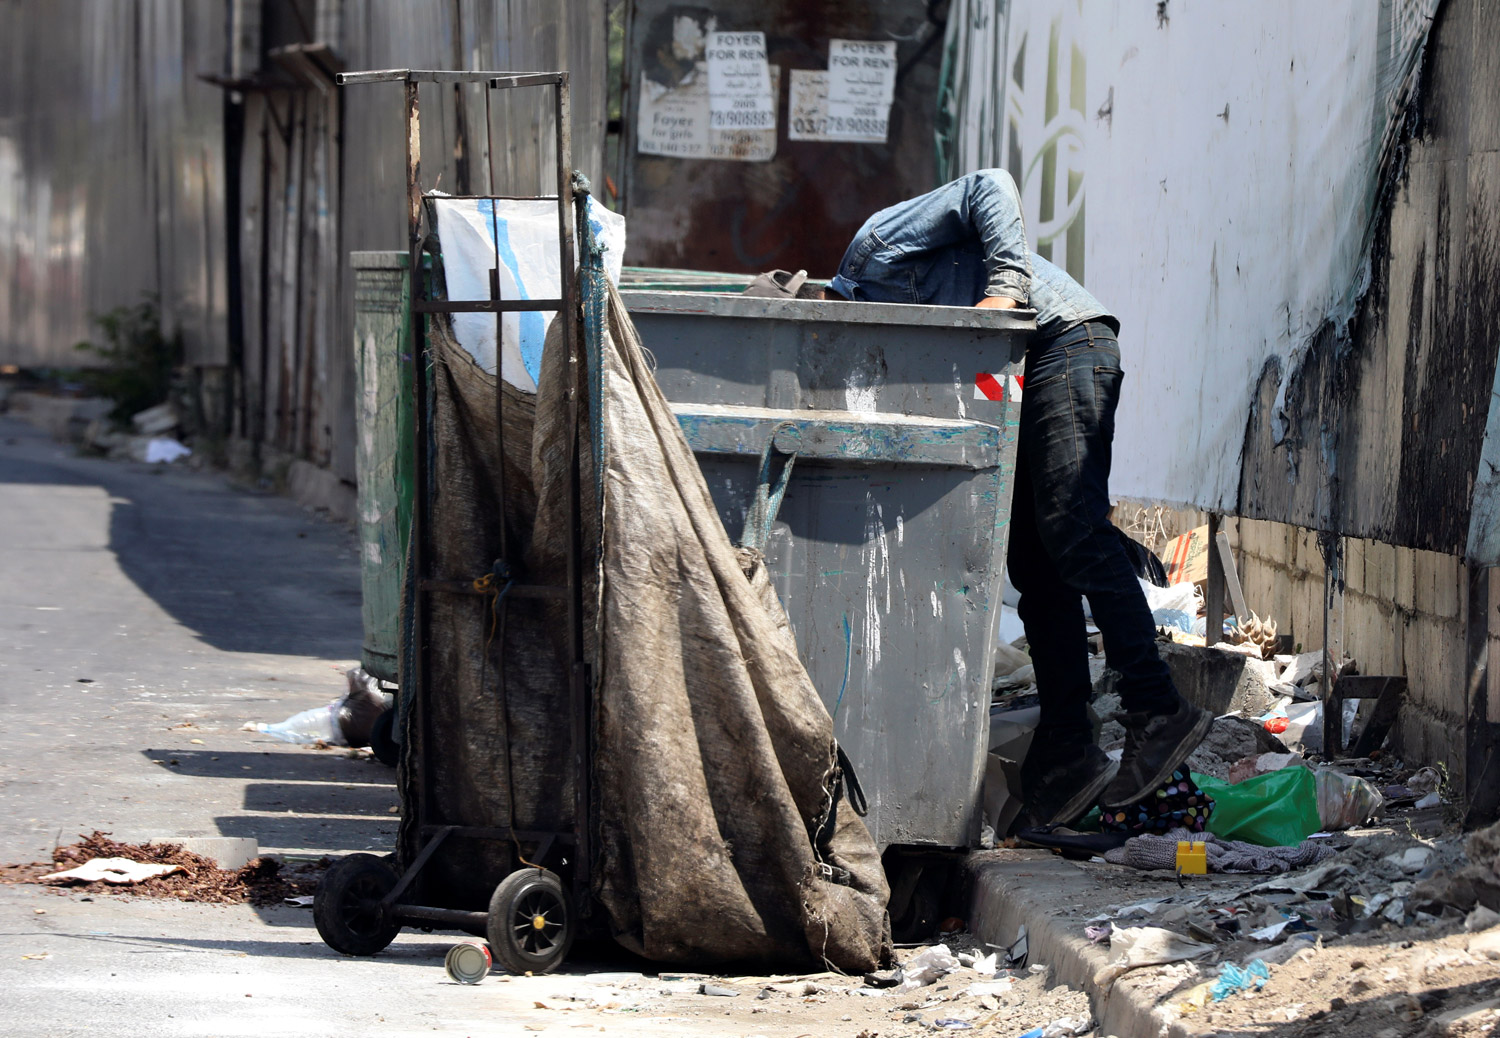  حوالي 48 في المئة من اللبنانيين كانوا يعيشون بنهاية 2019 تحت خط الفقر.